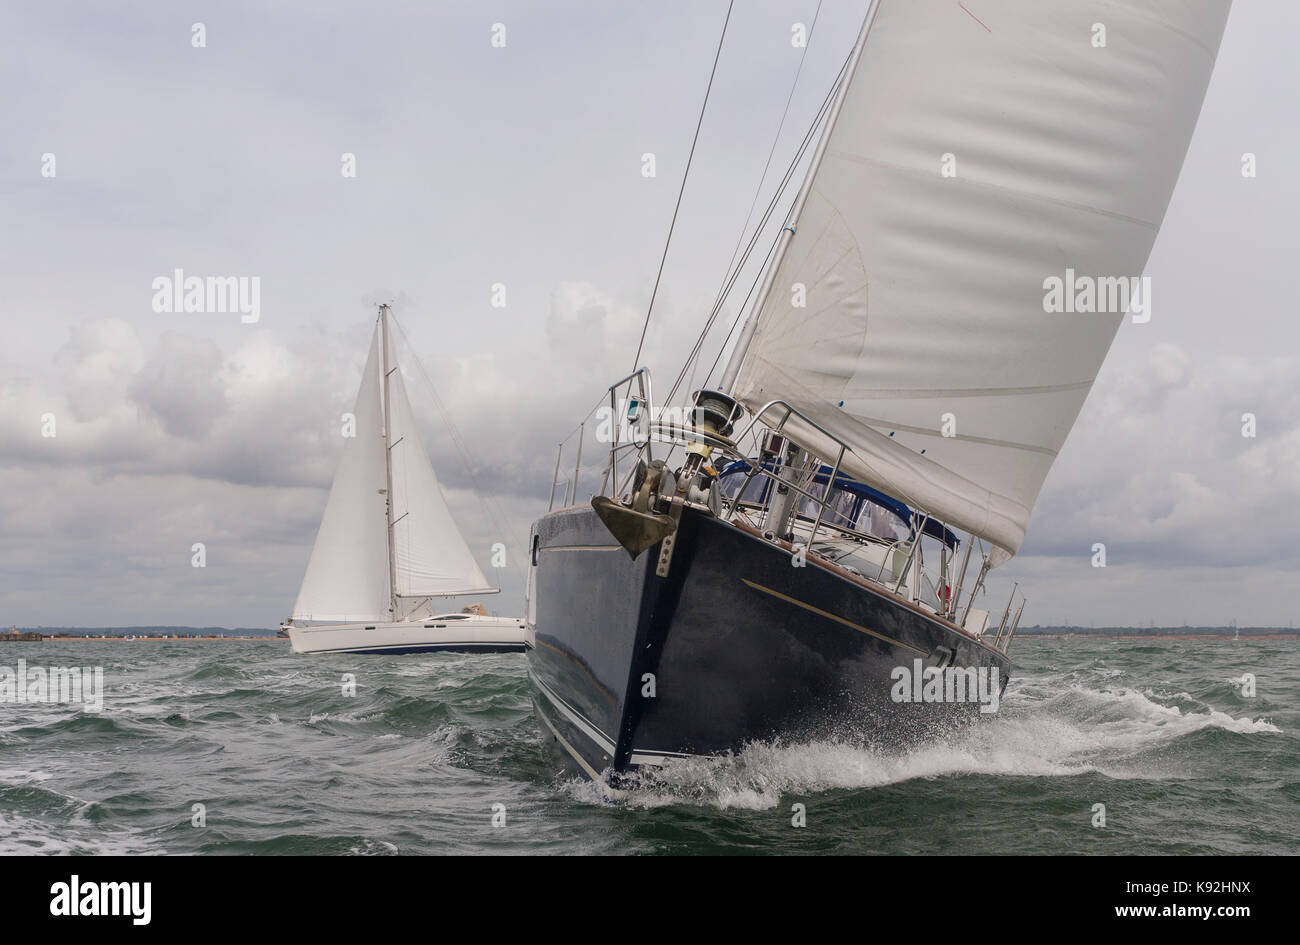 Two sailing boats, sail boat or yachts at sea Stock Photo